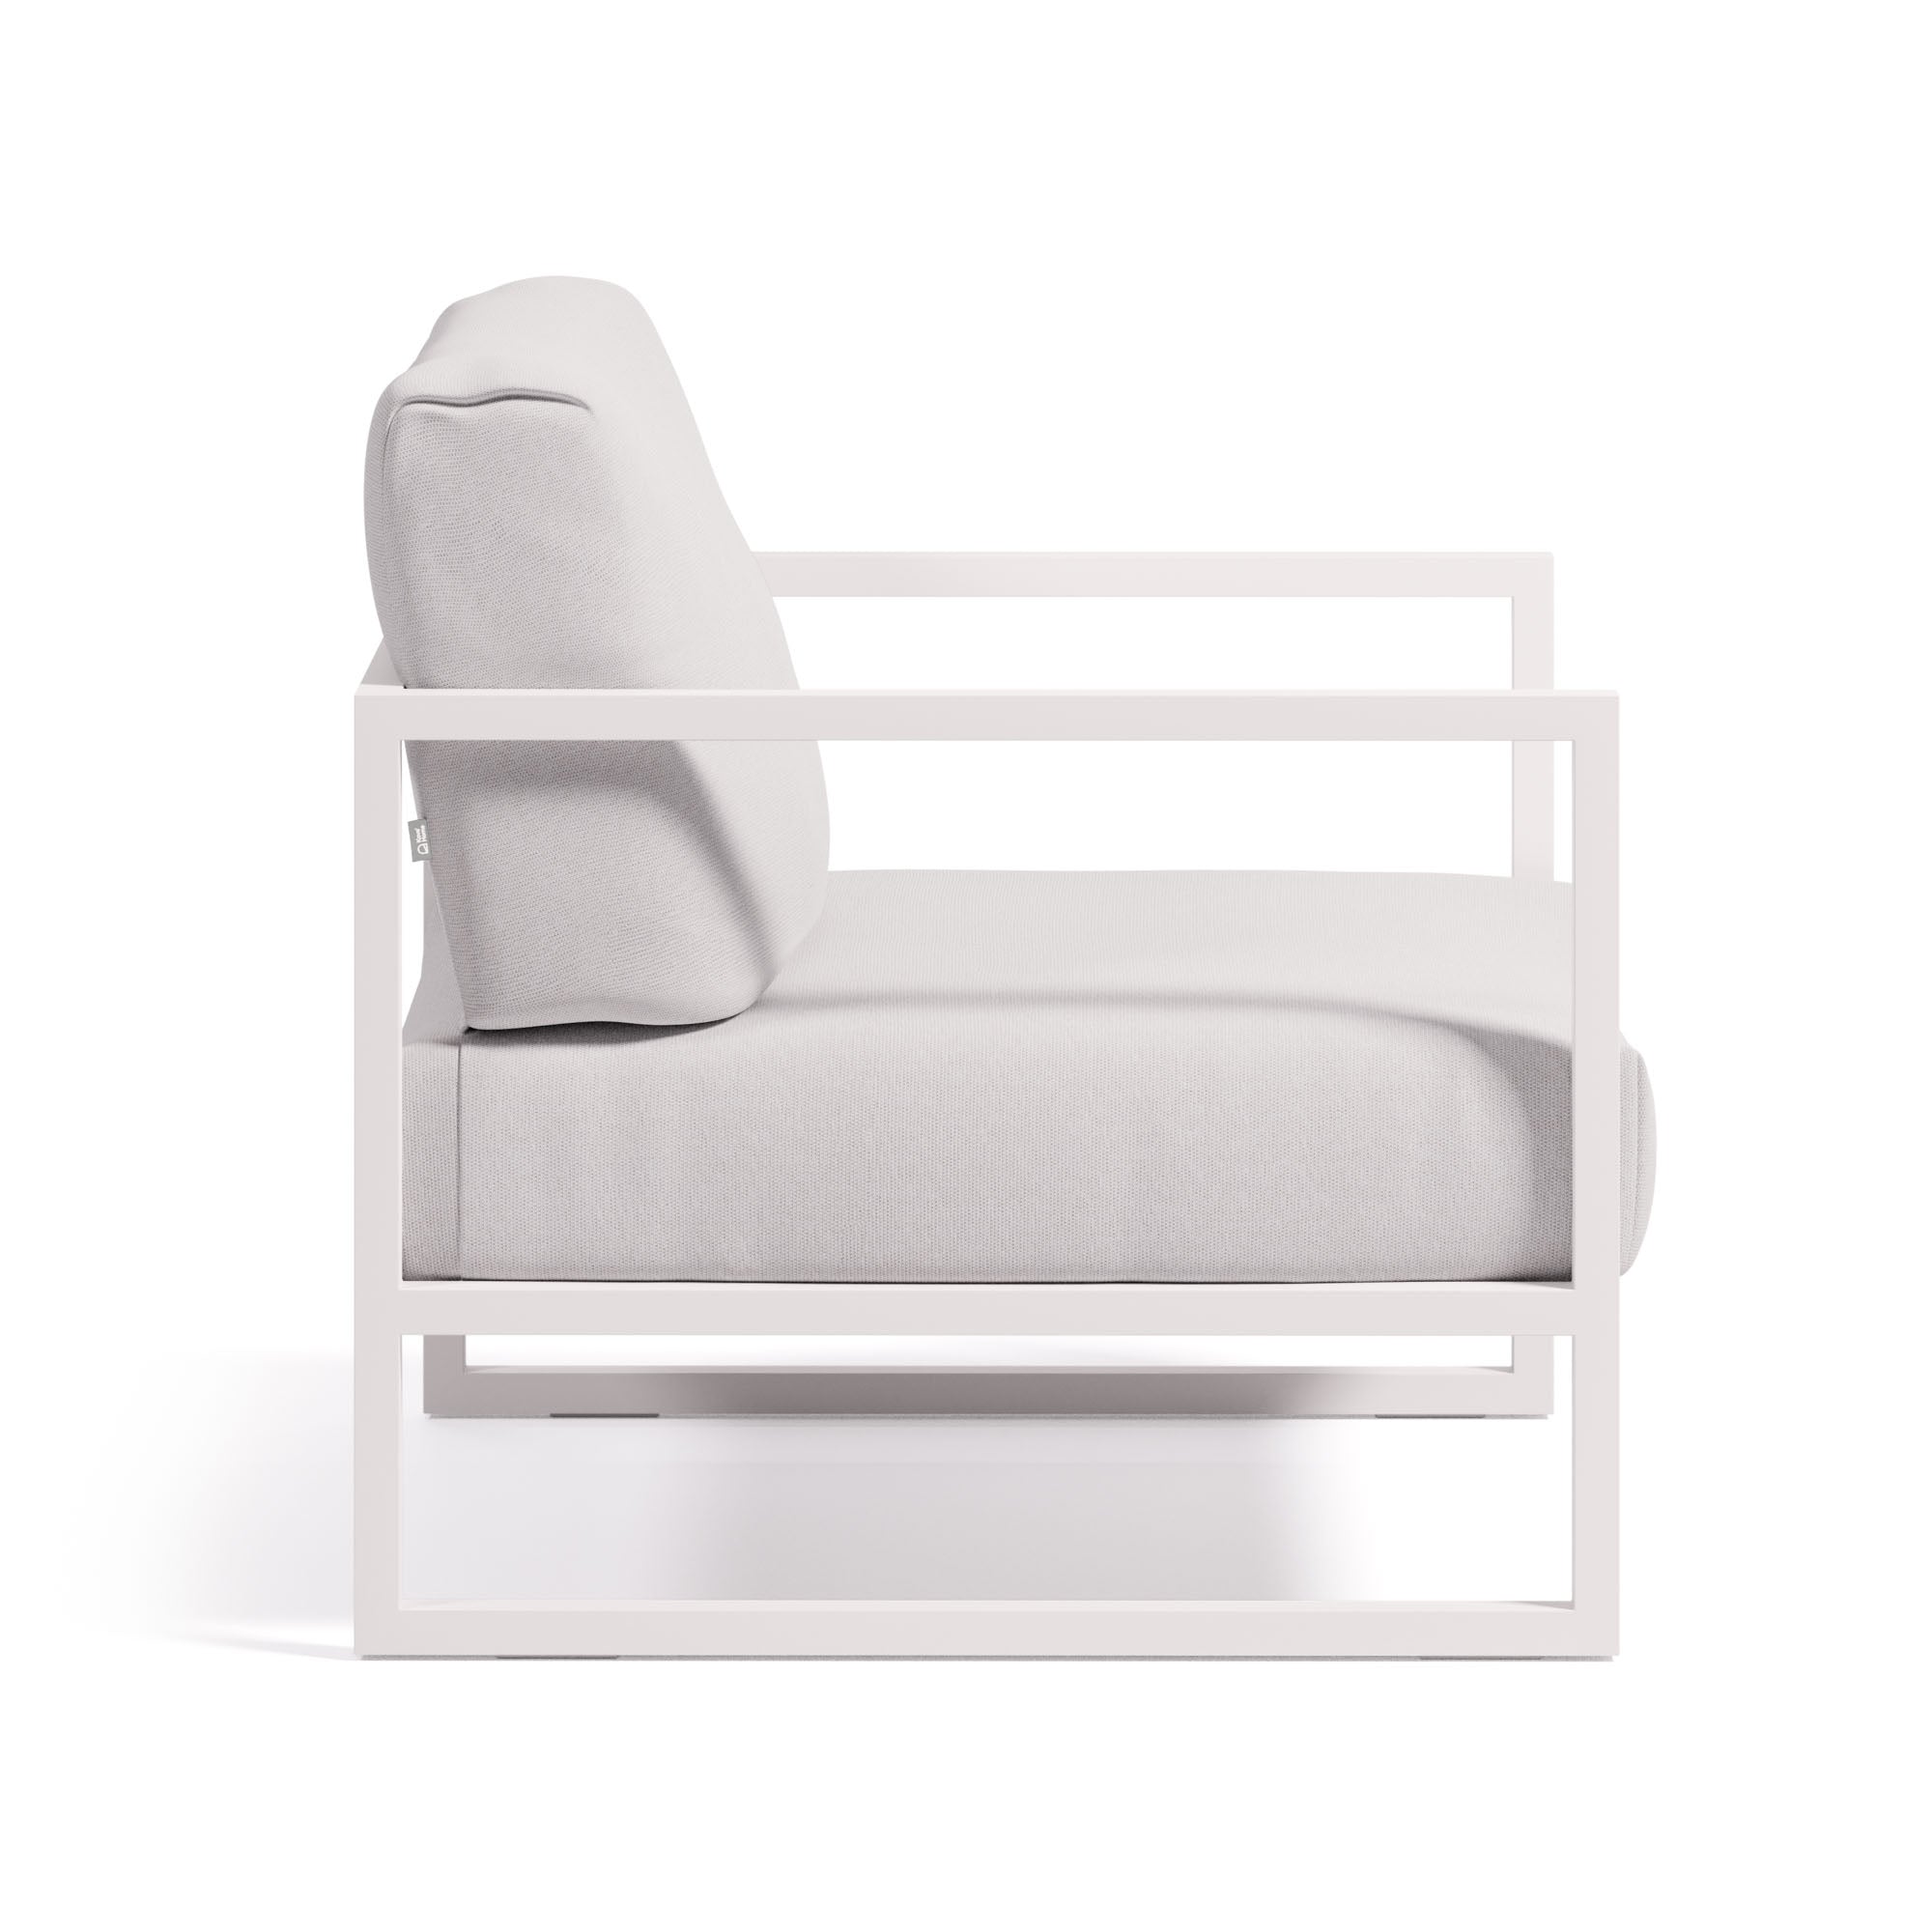 Comova 100%-os kültéri fotel fehér és fehér alumíniumból